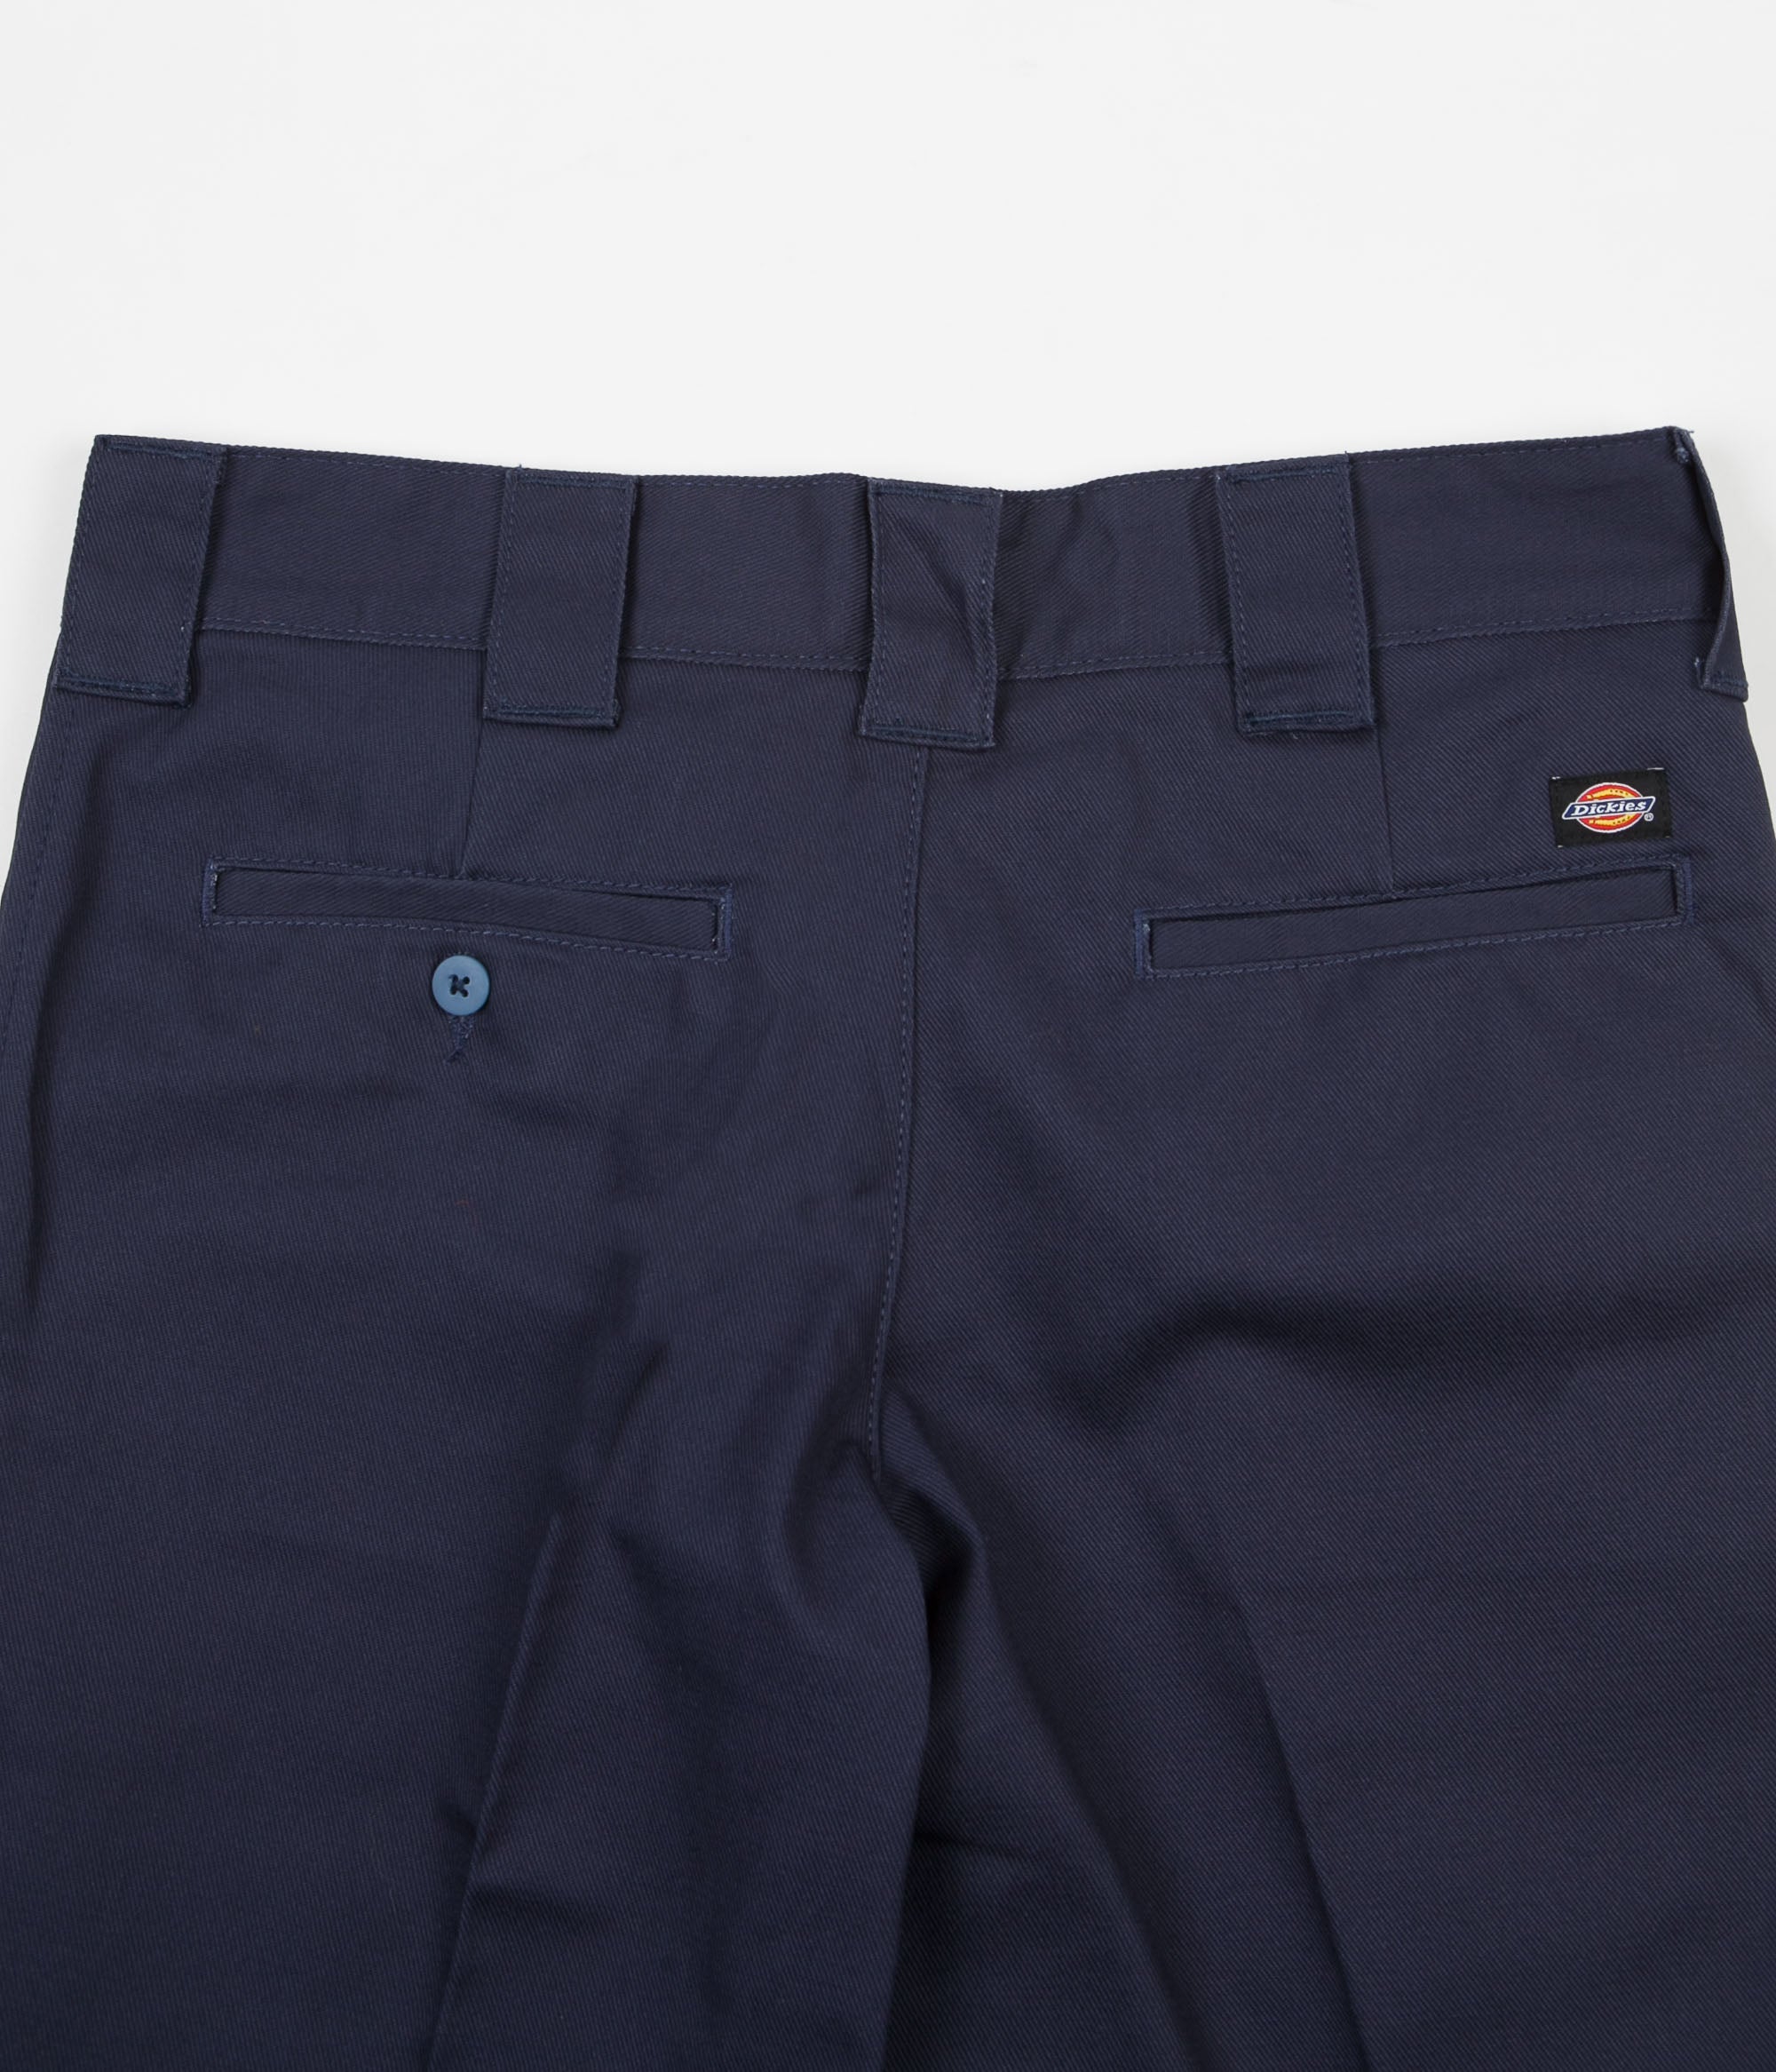 Dickies 873 Work Shorts - Navy Blue | Flatspot